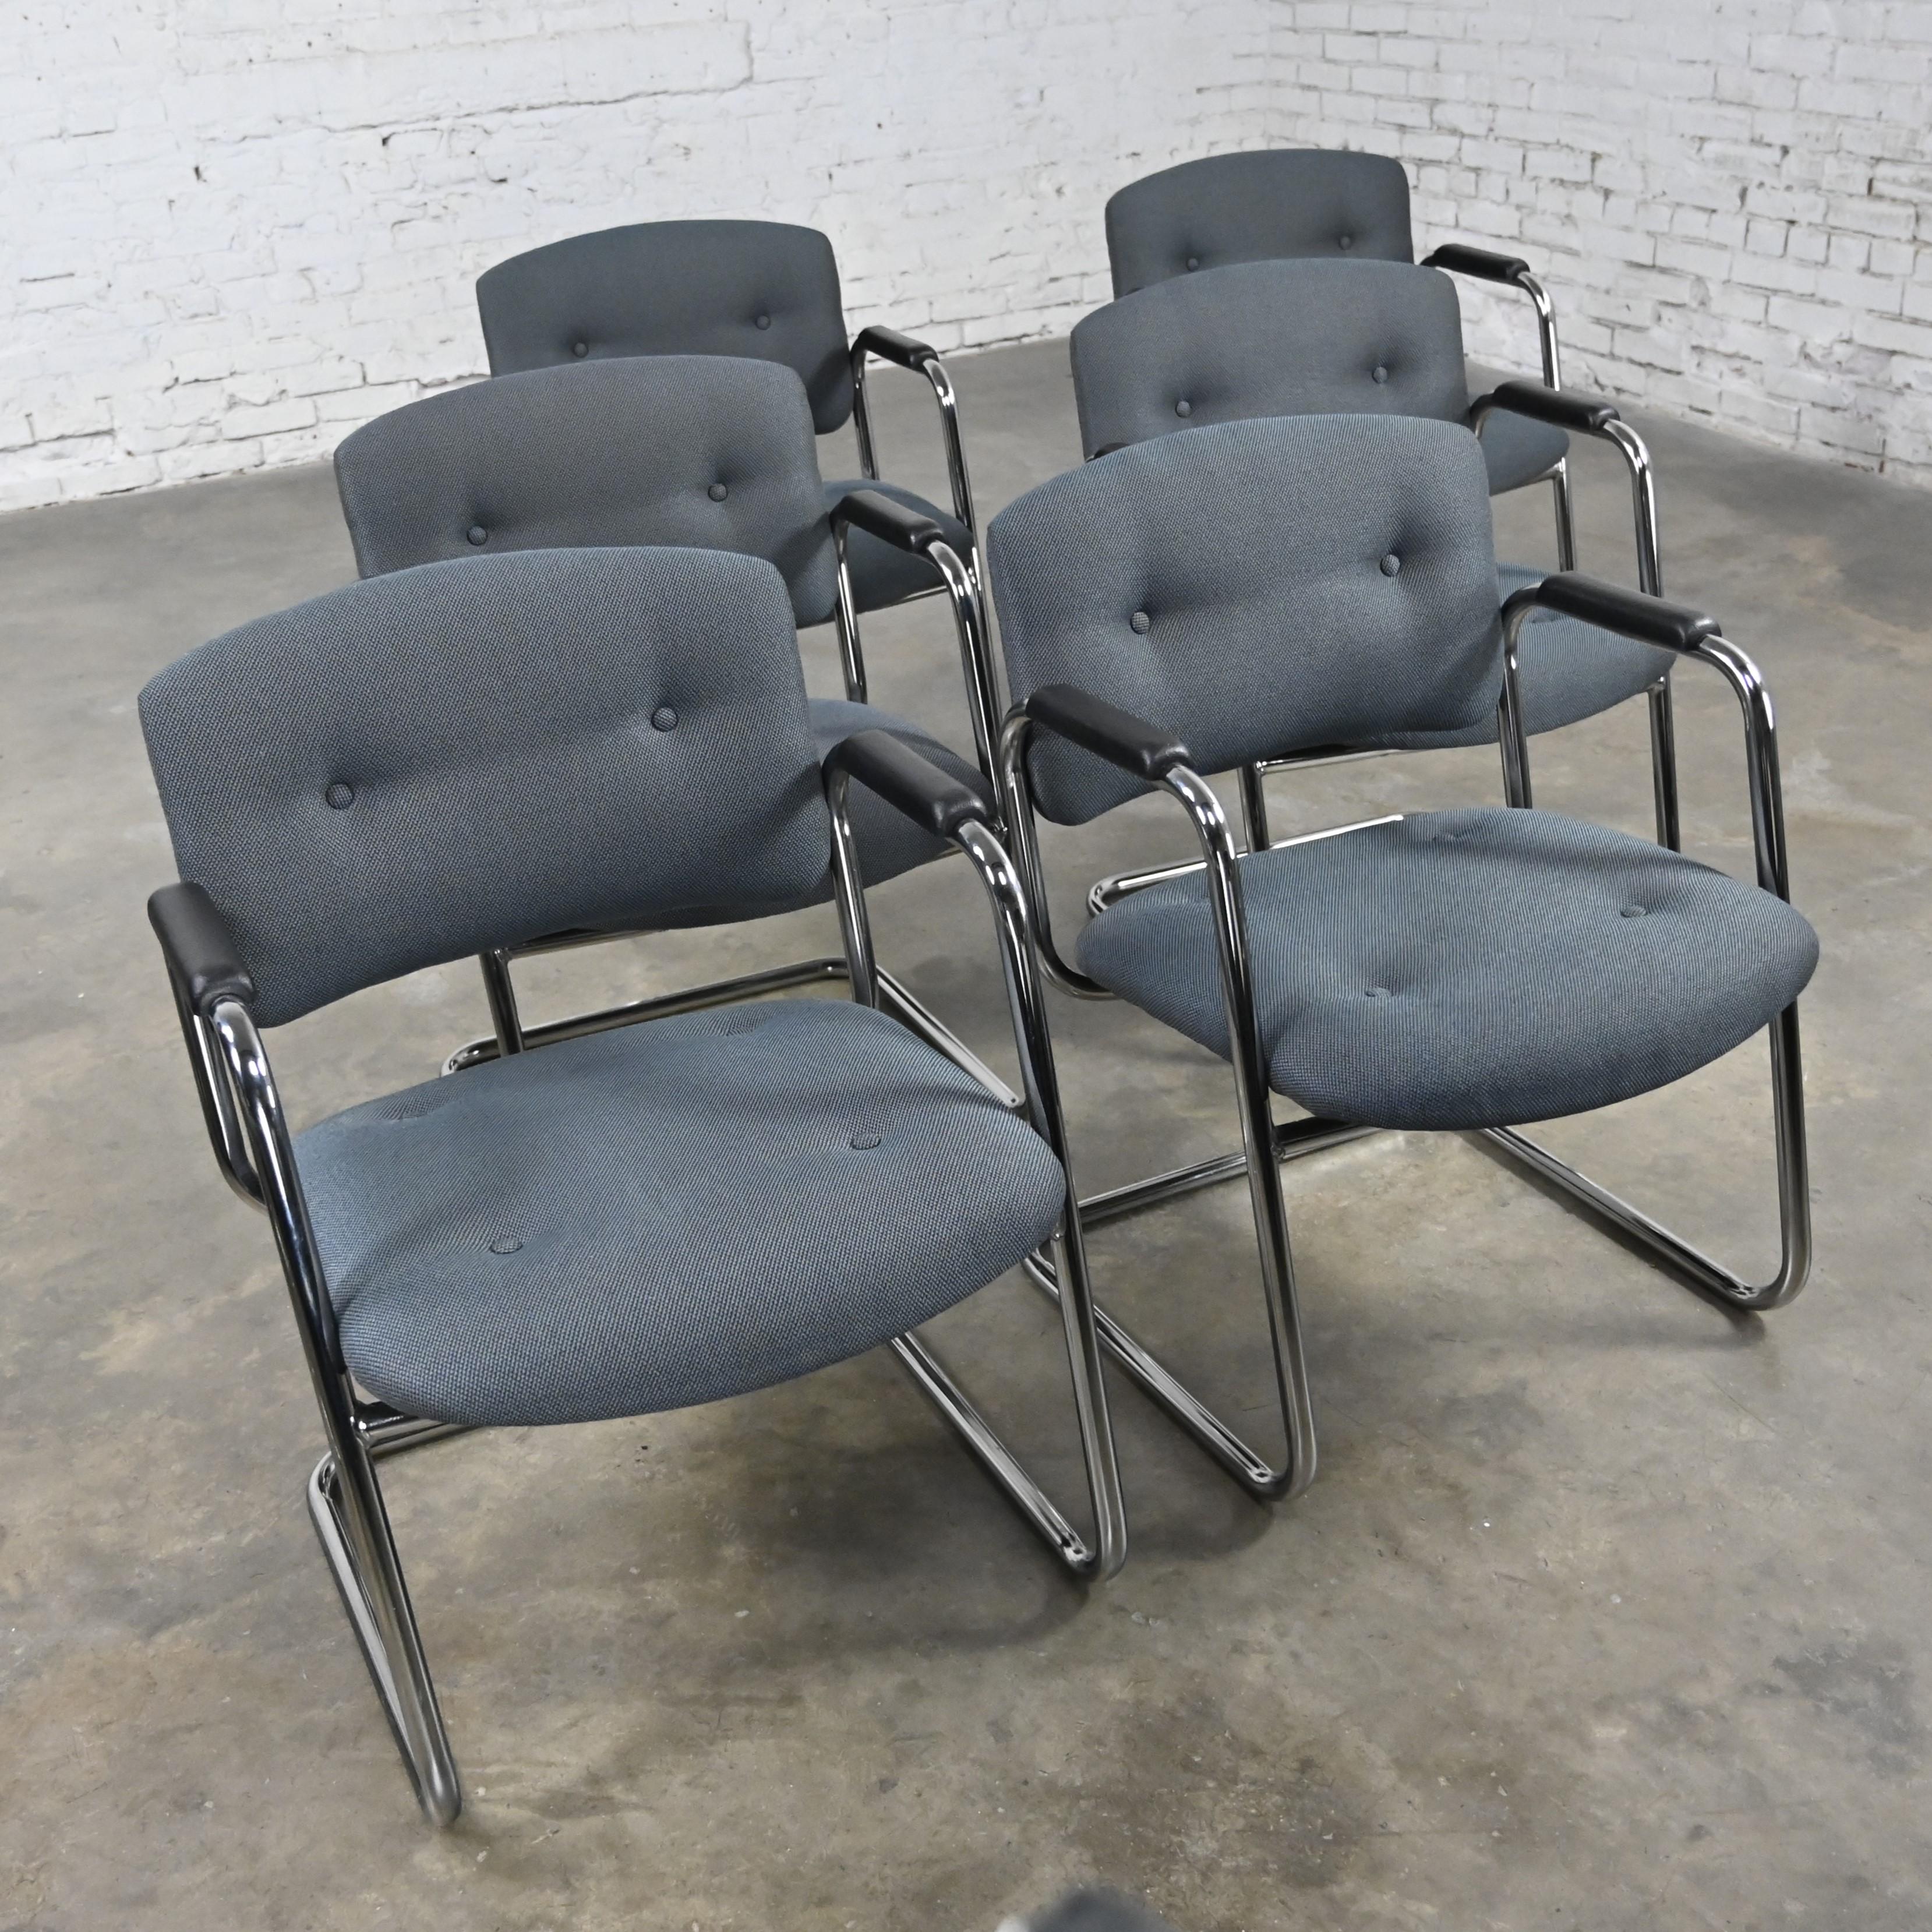 Superbes chaises cantilever vintage grises et chromées de United Chair Company dans le style de Steelcase, ensemble de 6. Composées d'un piétement luge chromé, d'accoudoirs en plastique noir et de leur tissu tweed gris d'origine avec des détails de